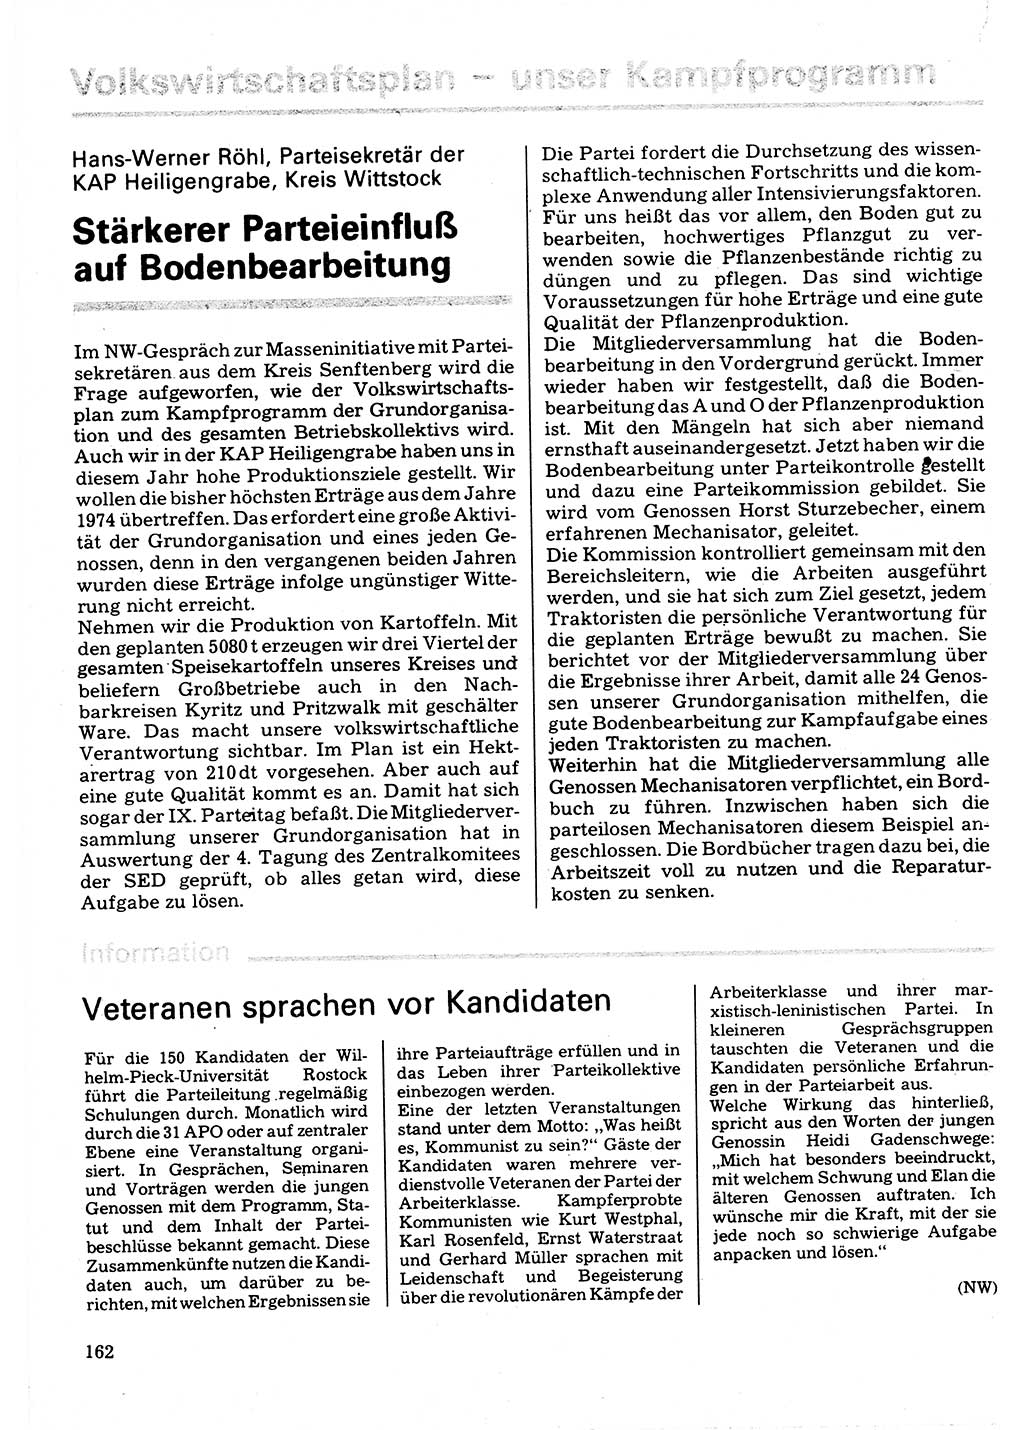 Neuer Weg (NW), Organ des Zentralkomitees (ZK) der SED (Sozialistische Einheitspartei Deutschlands) für Fragen des Parteilebens, 32. Jahrgang [Deutsche Demokratische Republik (DDR)] 1977, Seite 162 (NW ZK SED DDR 1977, S. 162)